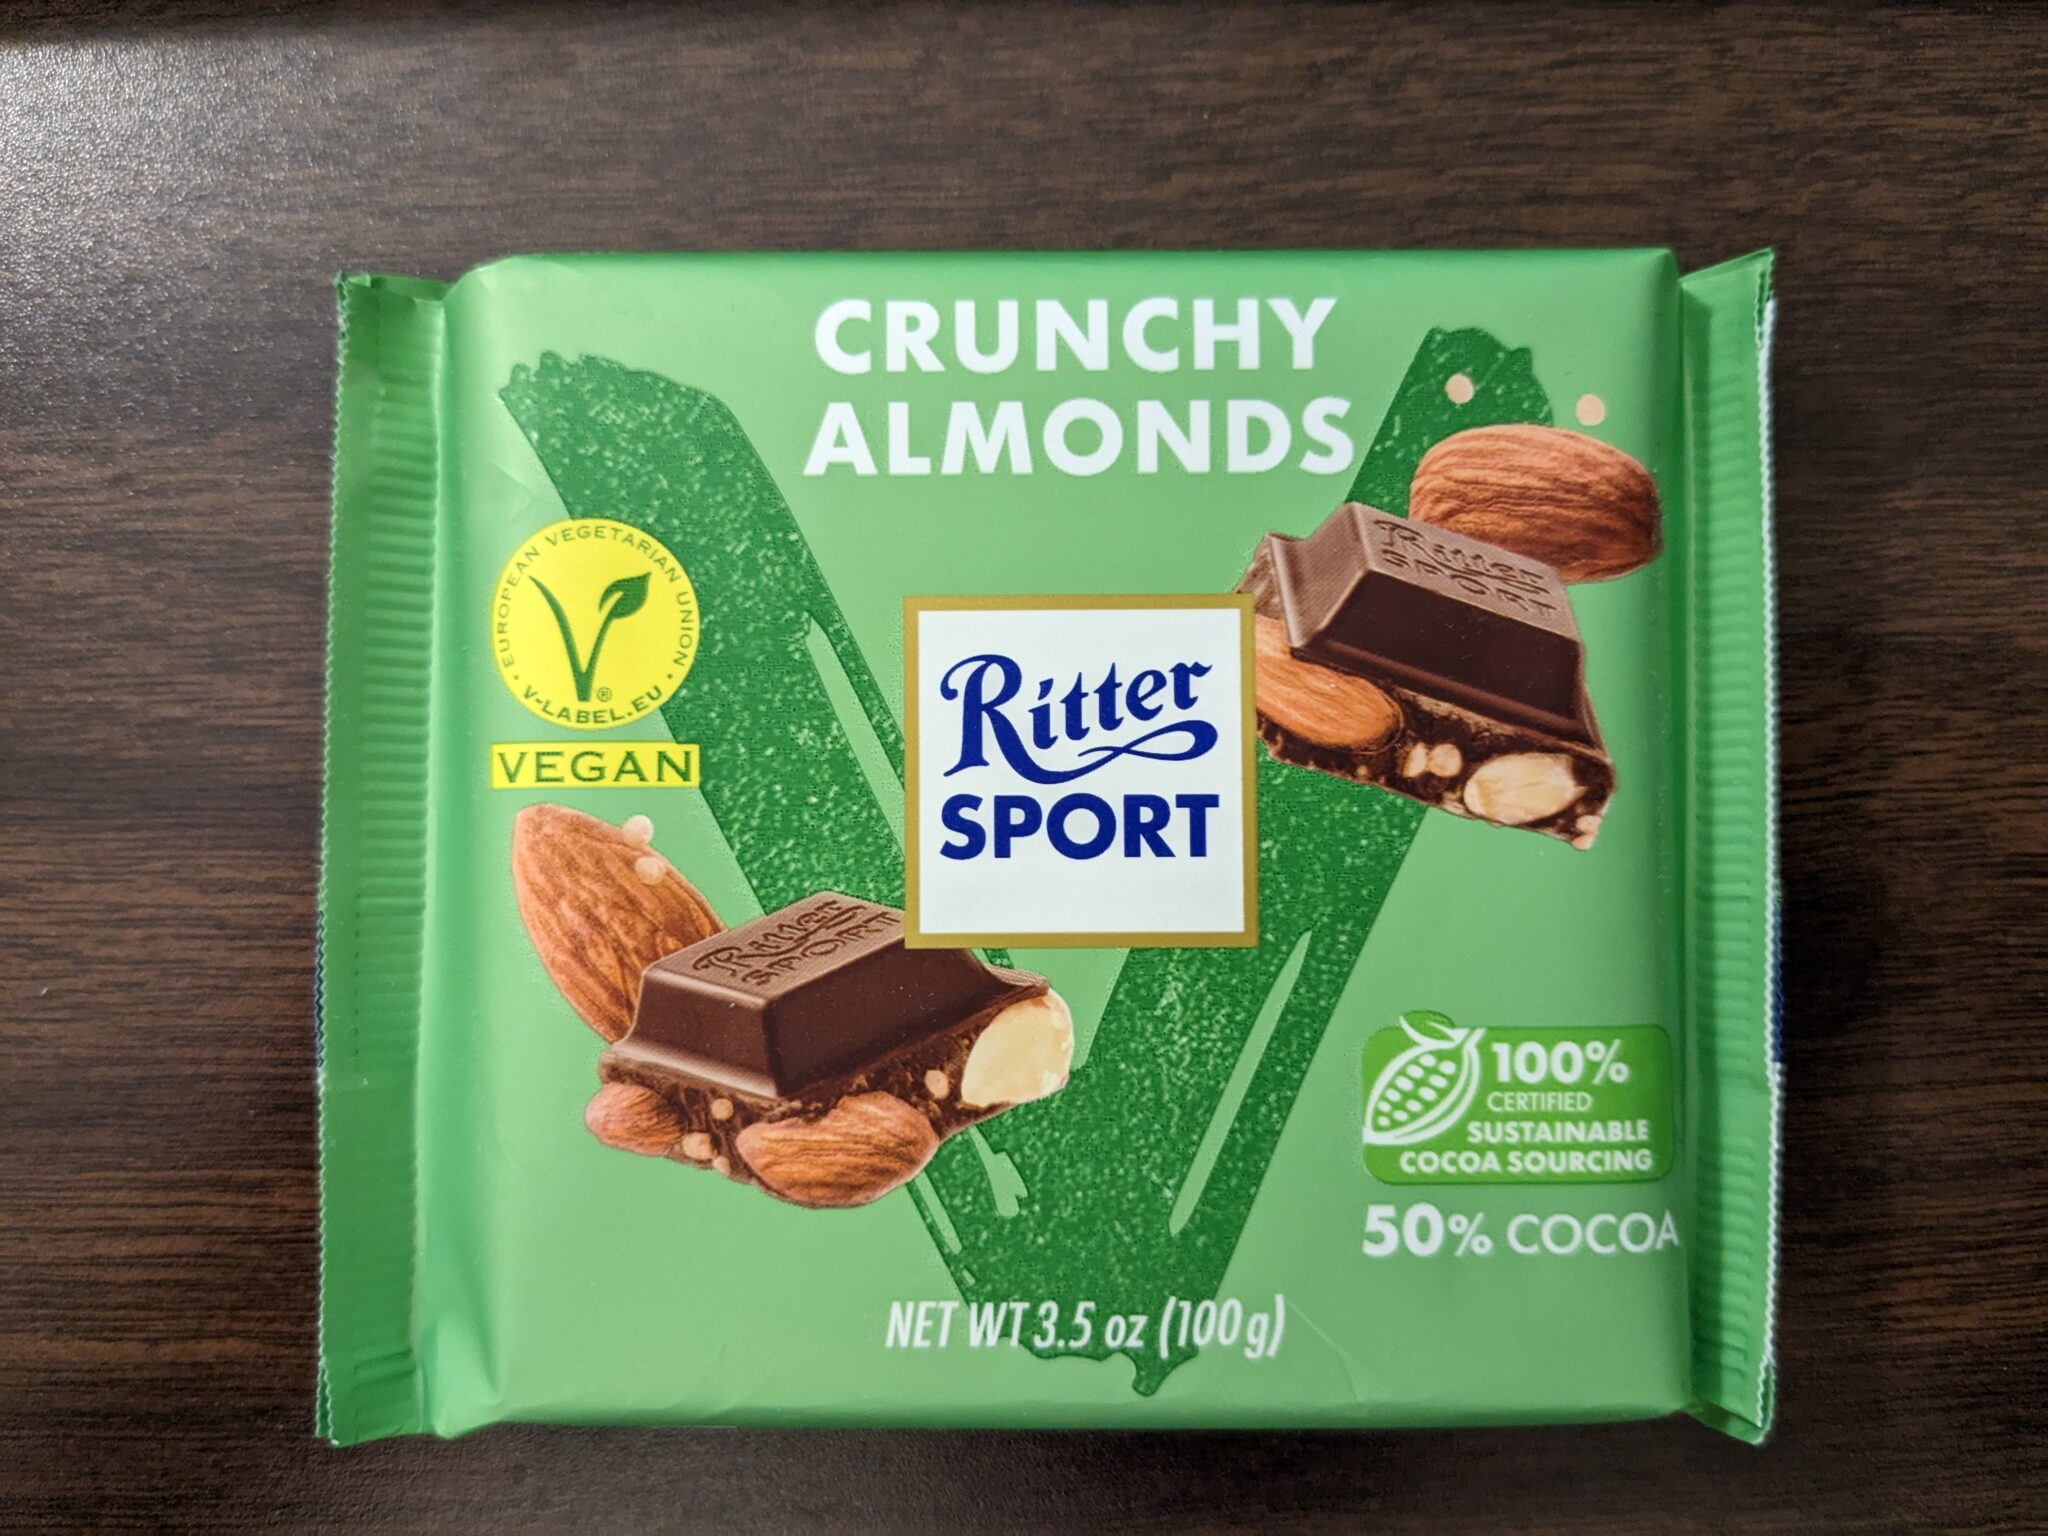 Ritter Sport – Vegan Crunchy Almonds